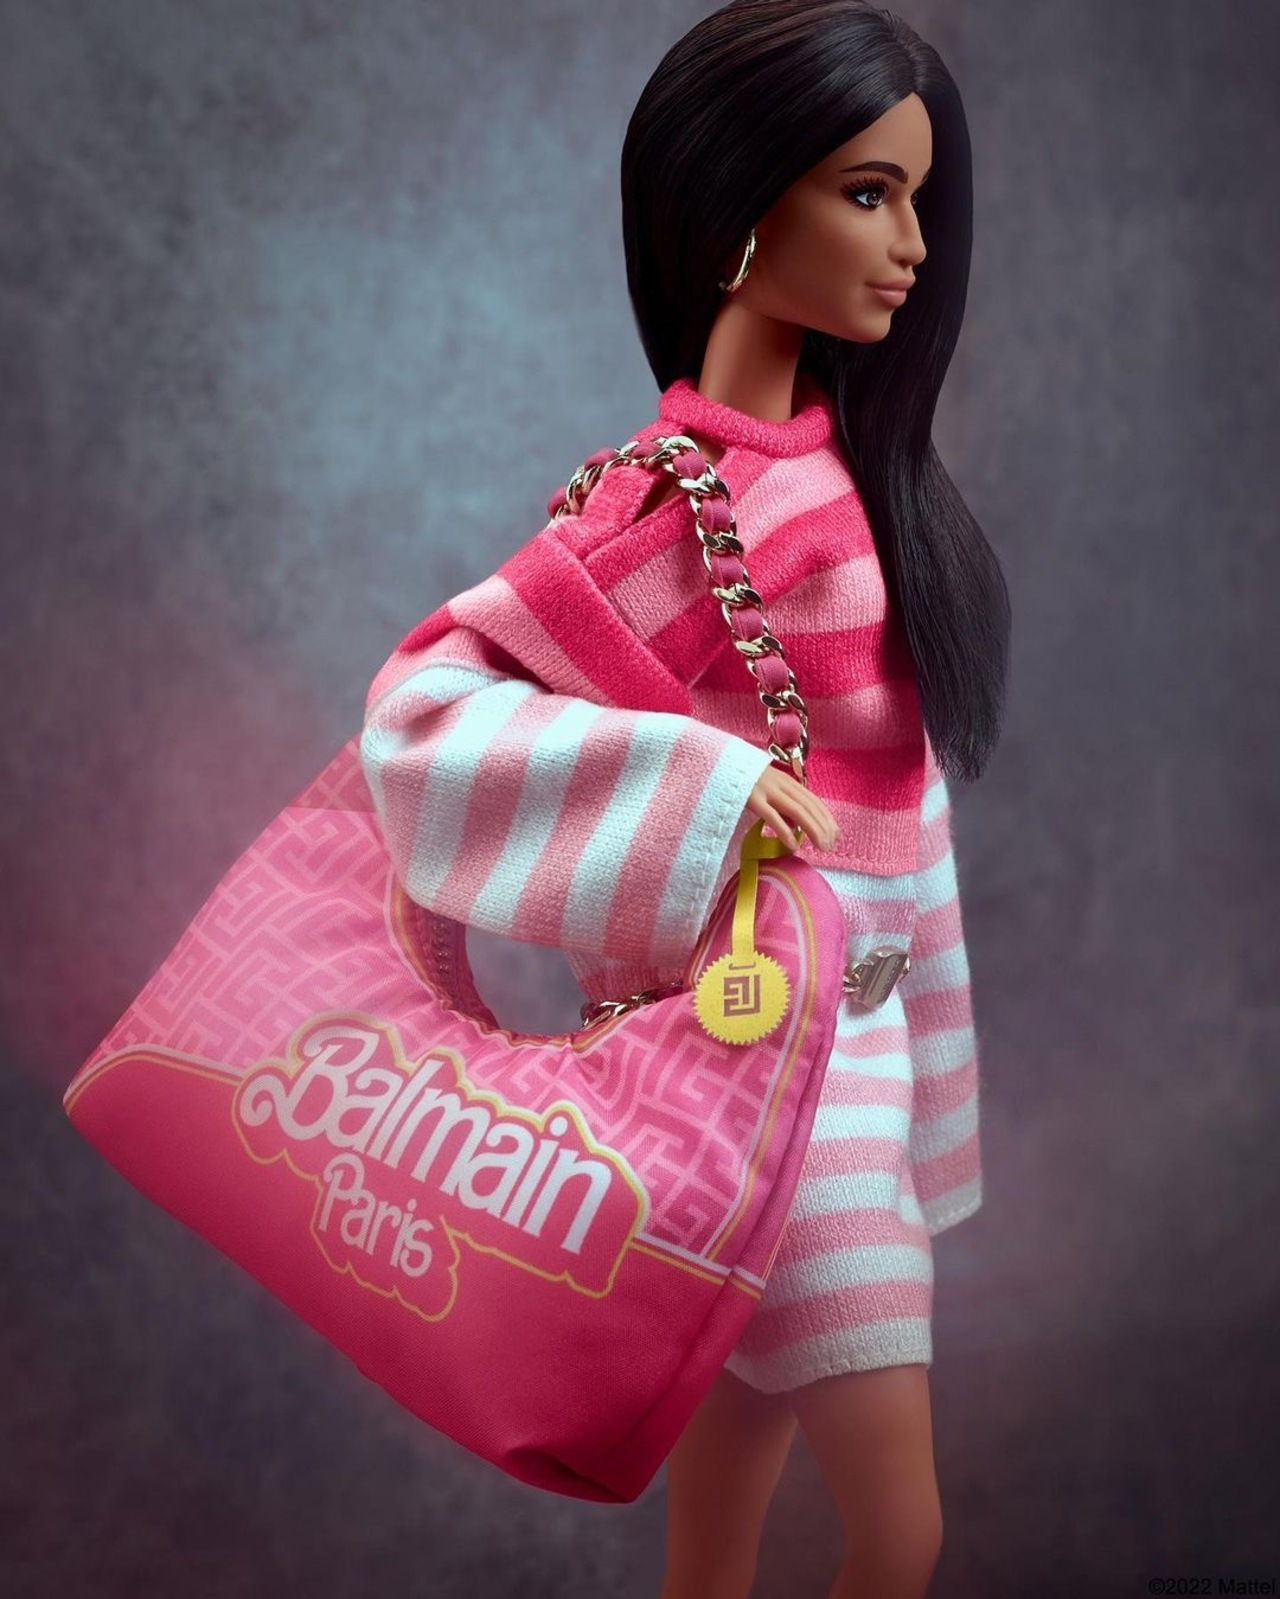 Balmain se alía con Barbie